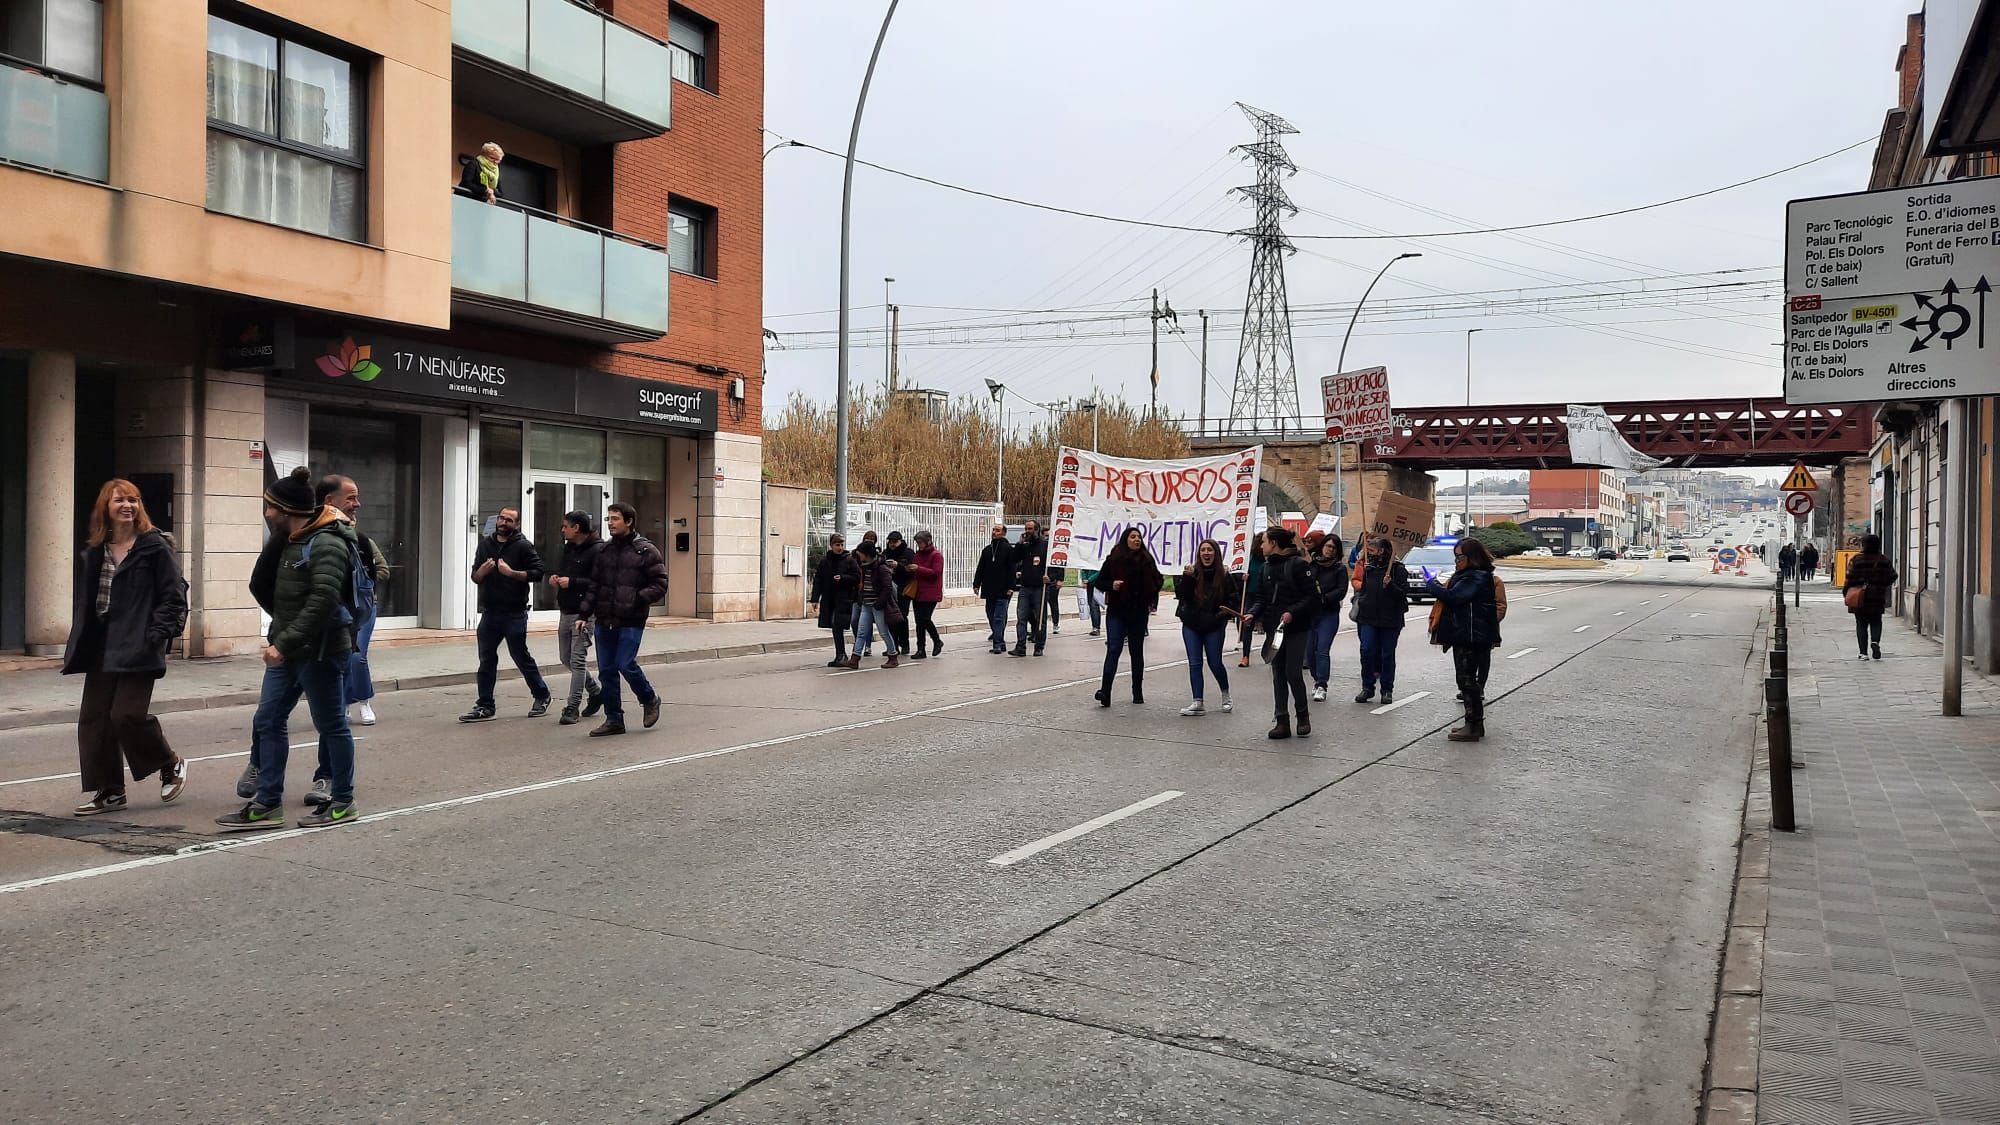 Talls de carretera a Manresa per la protesta de mestres i professors